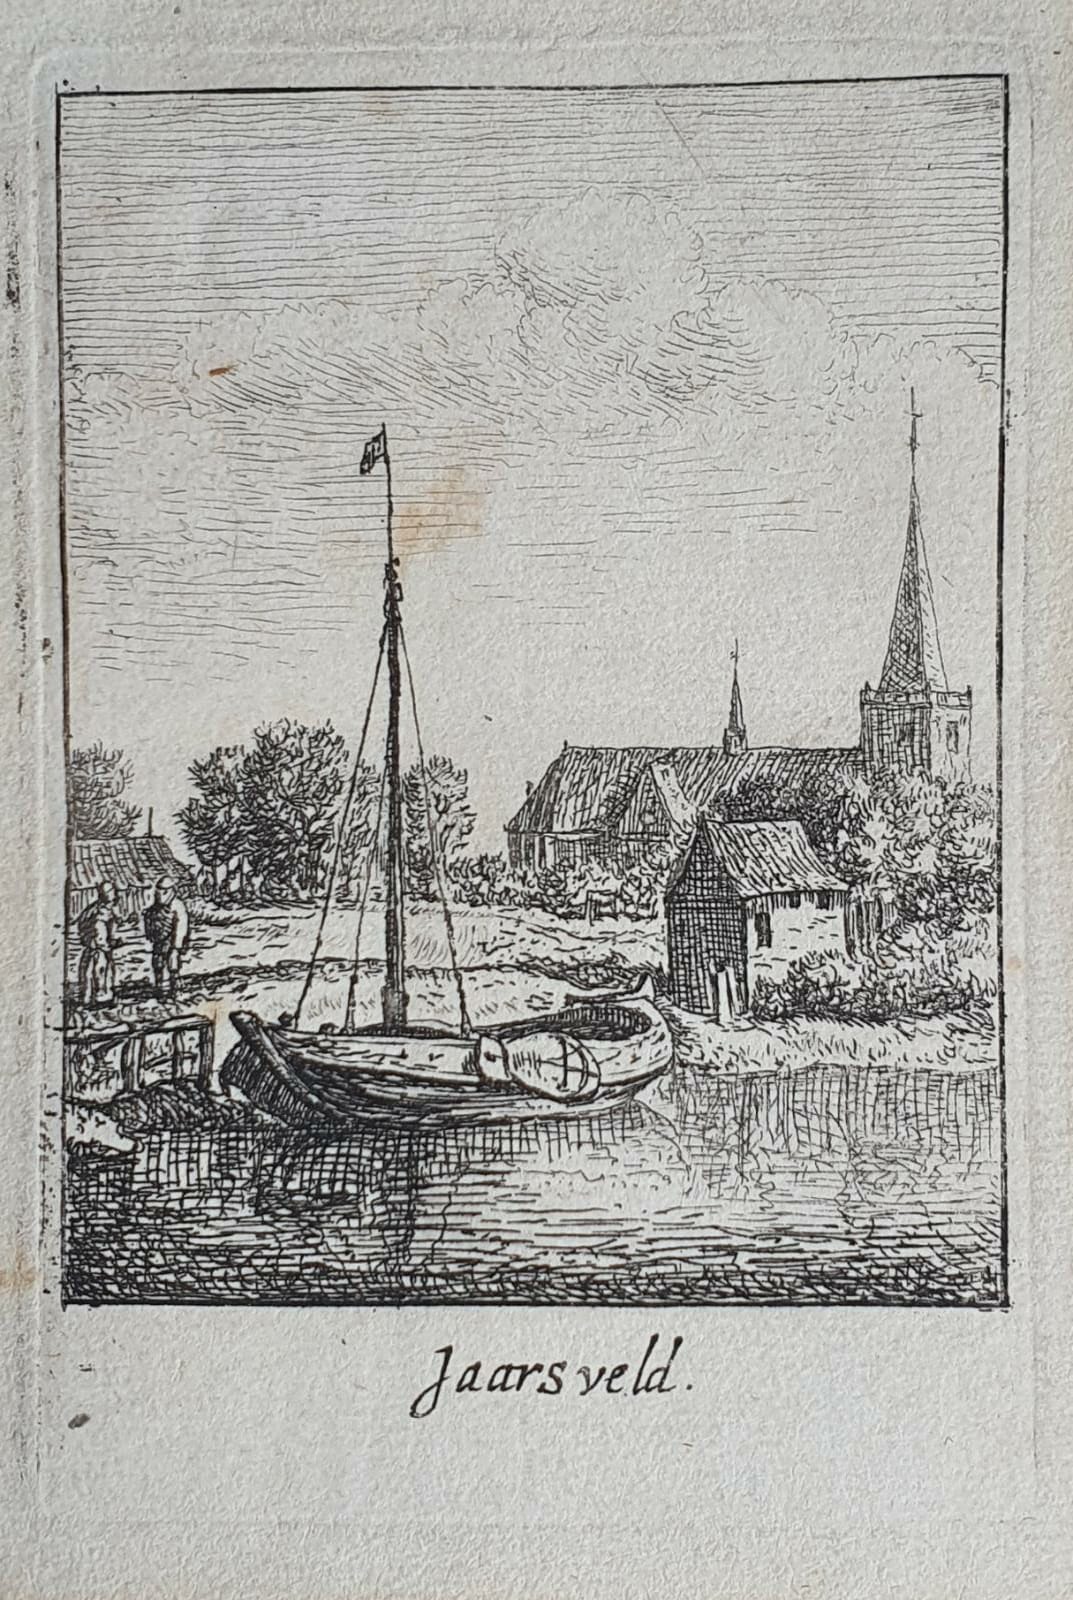 [Original etching, ets] J. v. Almeloveen after H. Saftleven. The village of Jaarsveld, published 1650-1700 .